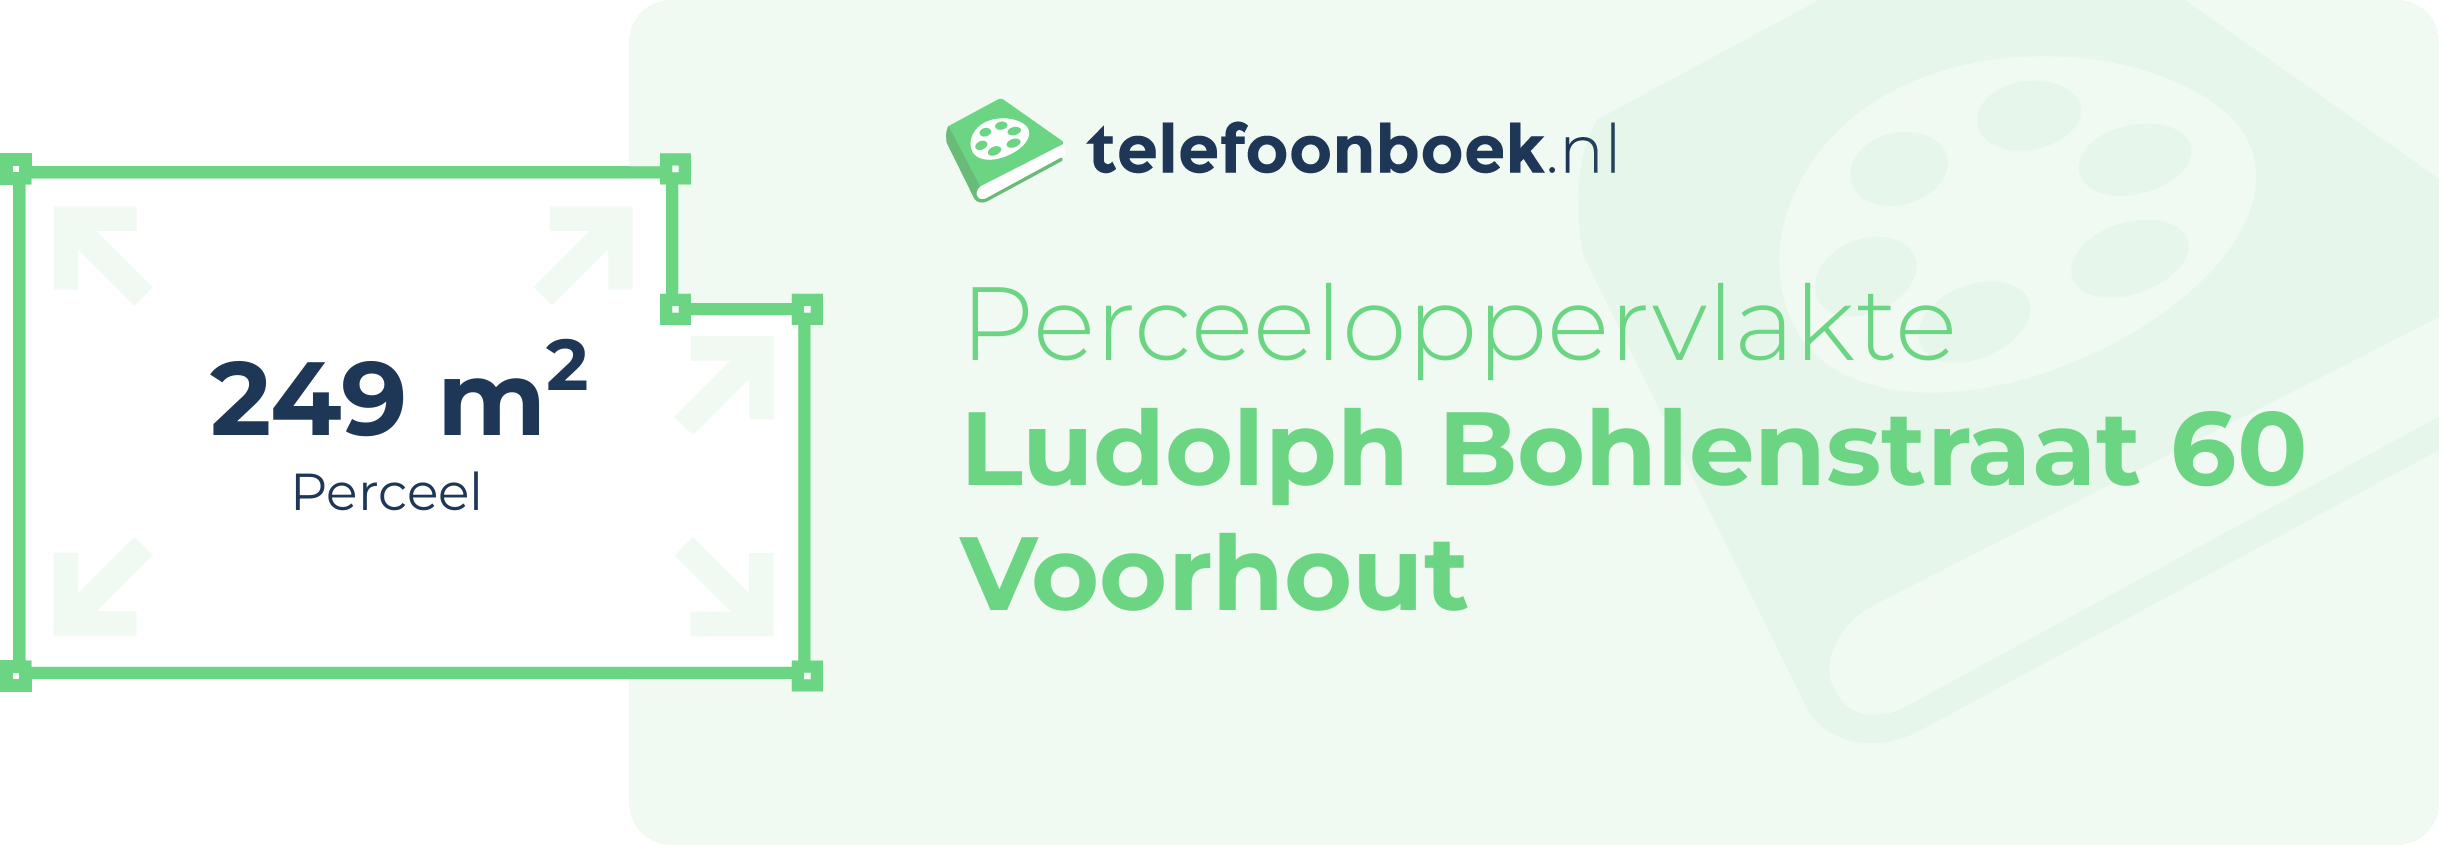 Perceeloppervlakte Ludolph Bohlenstraat 60 Voorhout